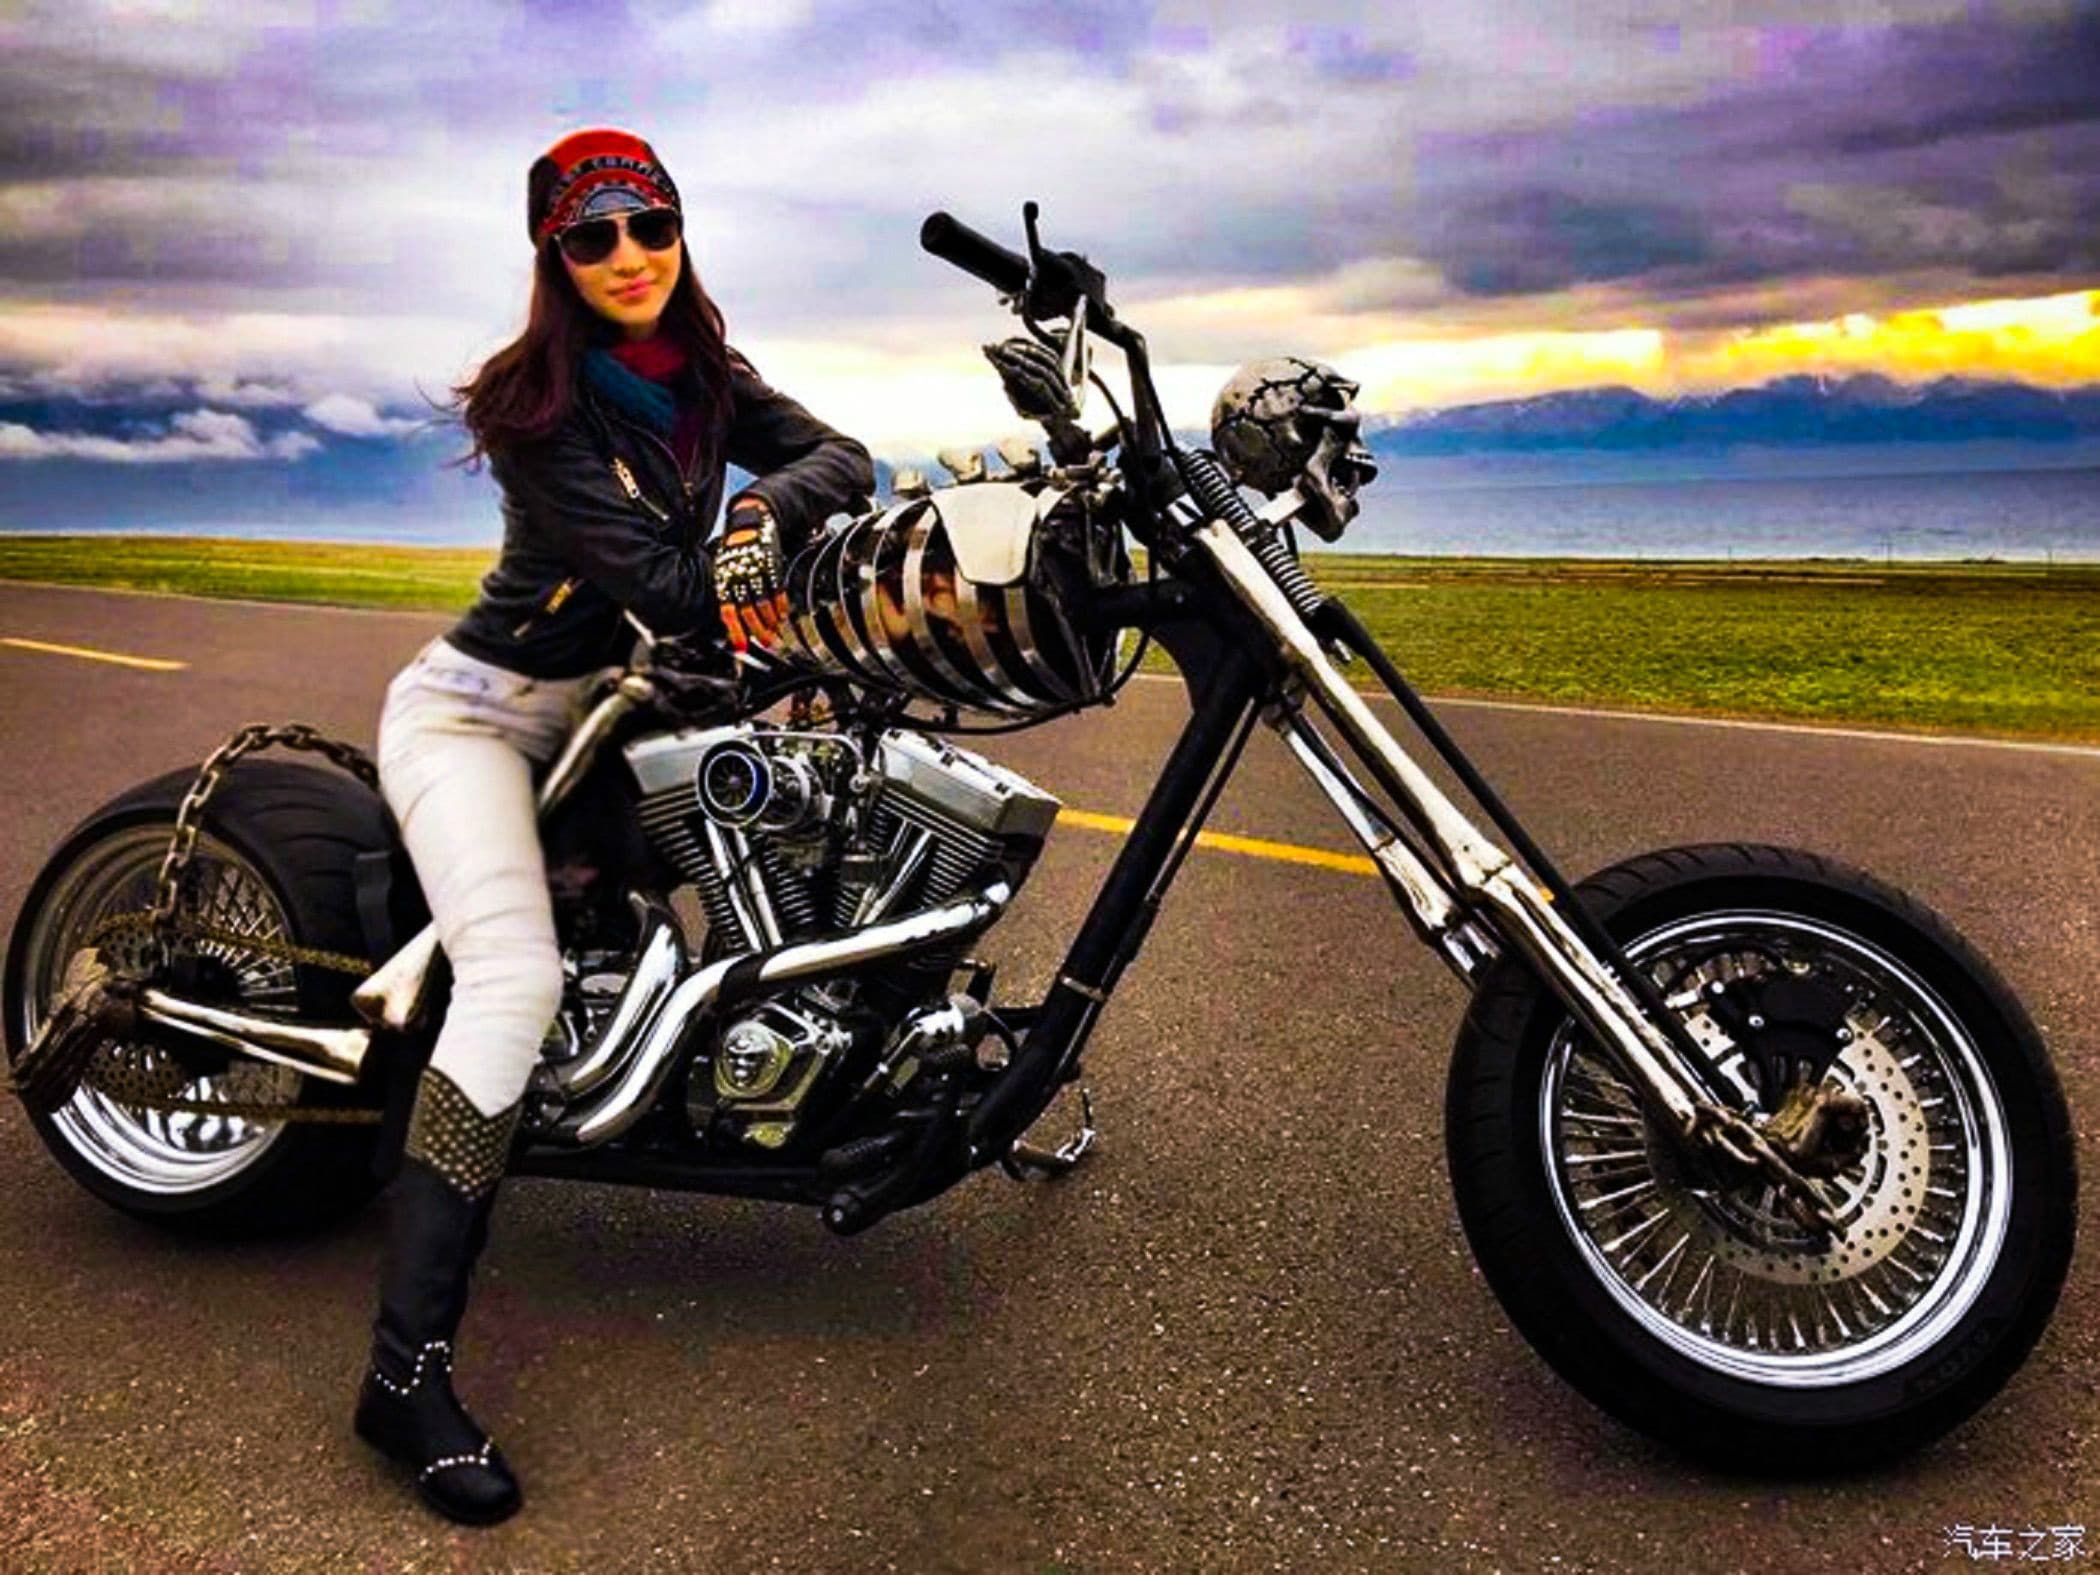 할리 데이비슨 차이나 걸(Harley Davidson China girl), Image - club.autohome.com.cn